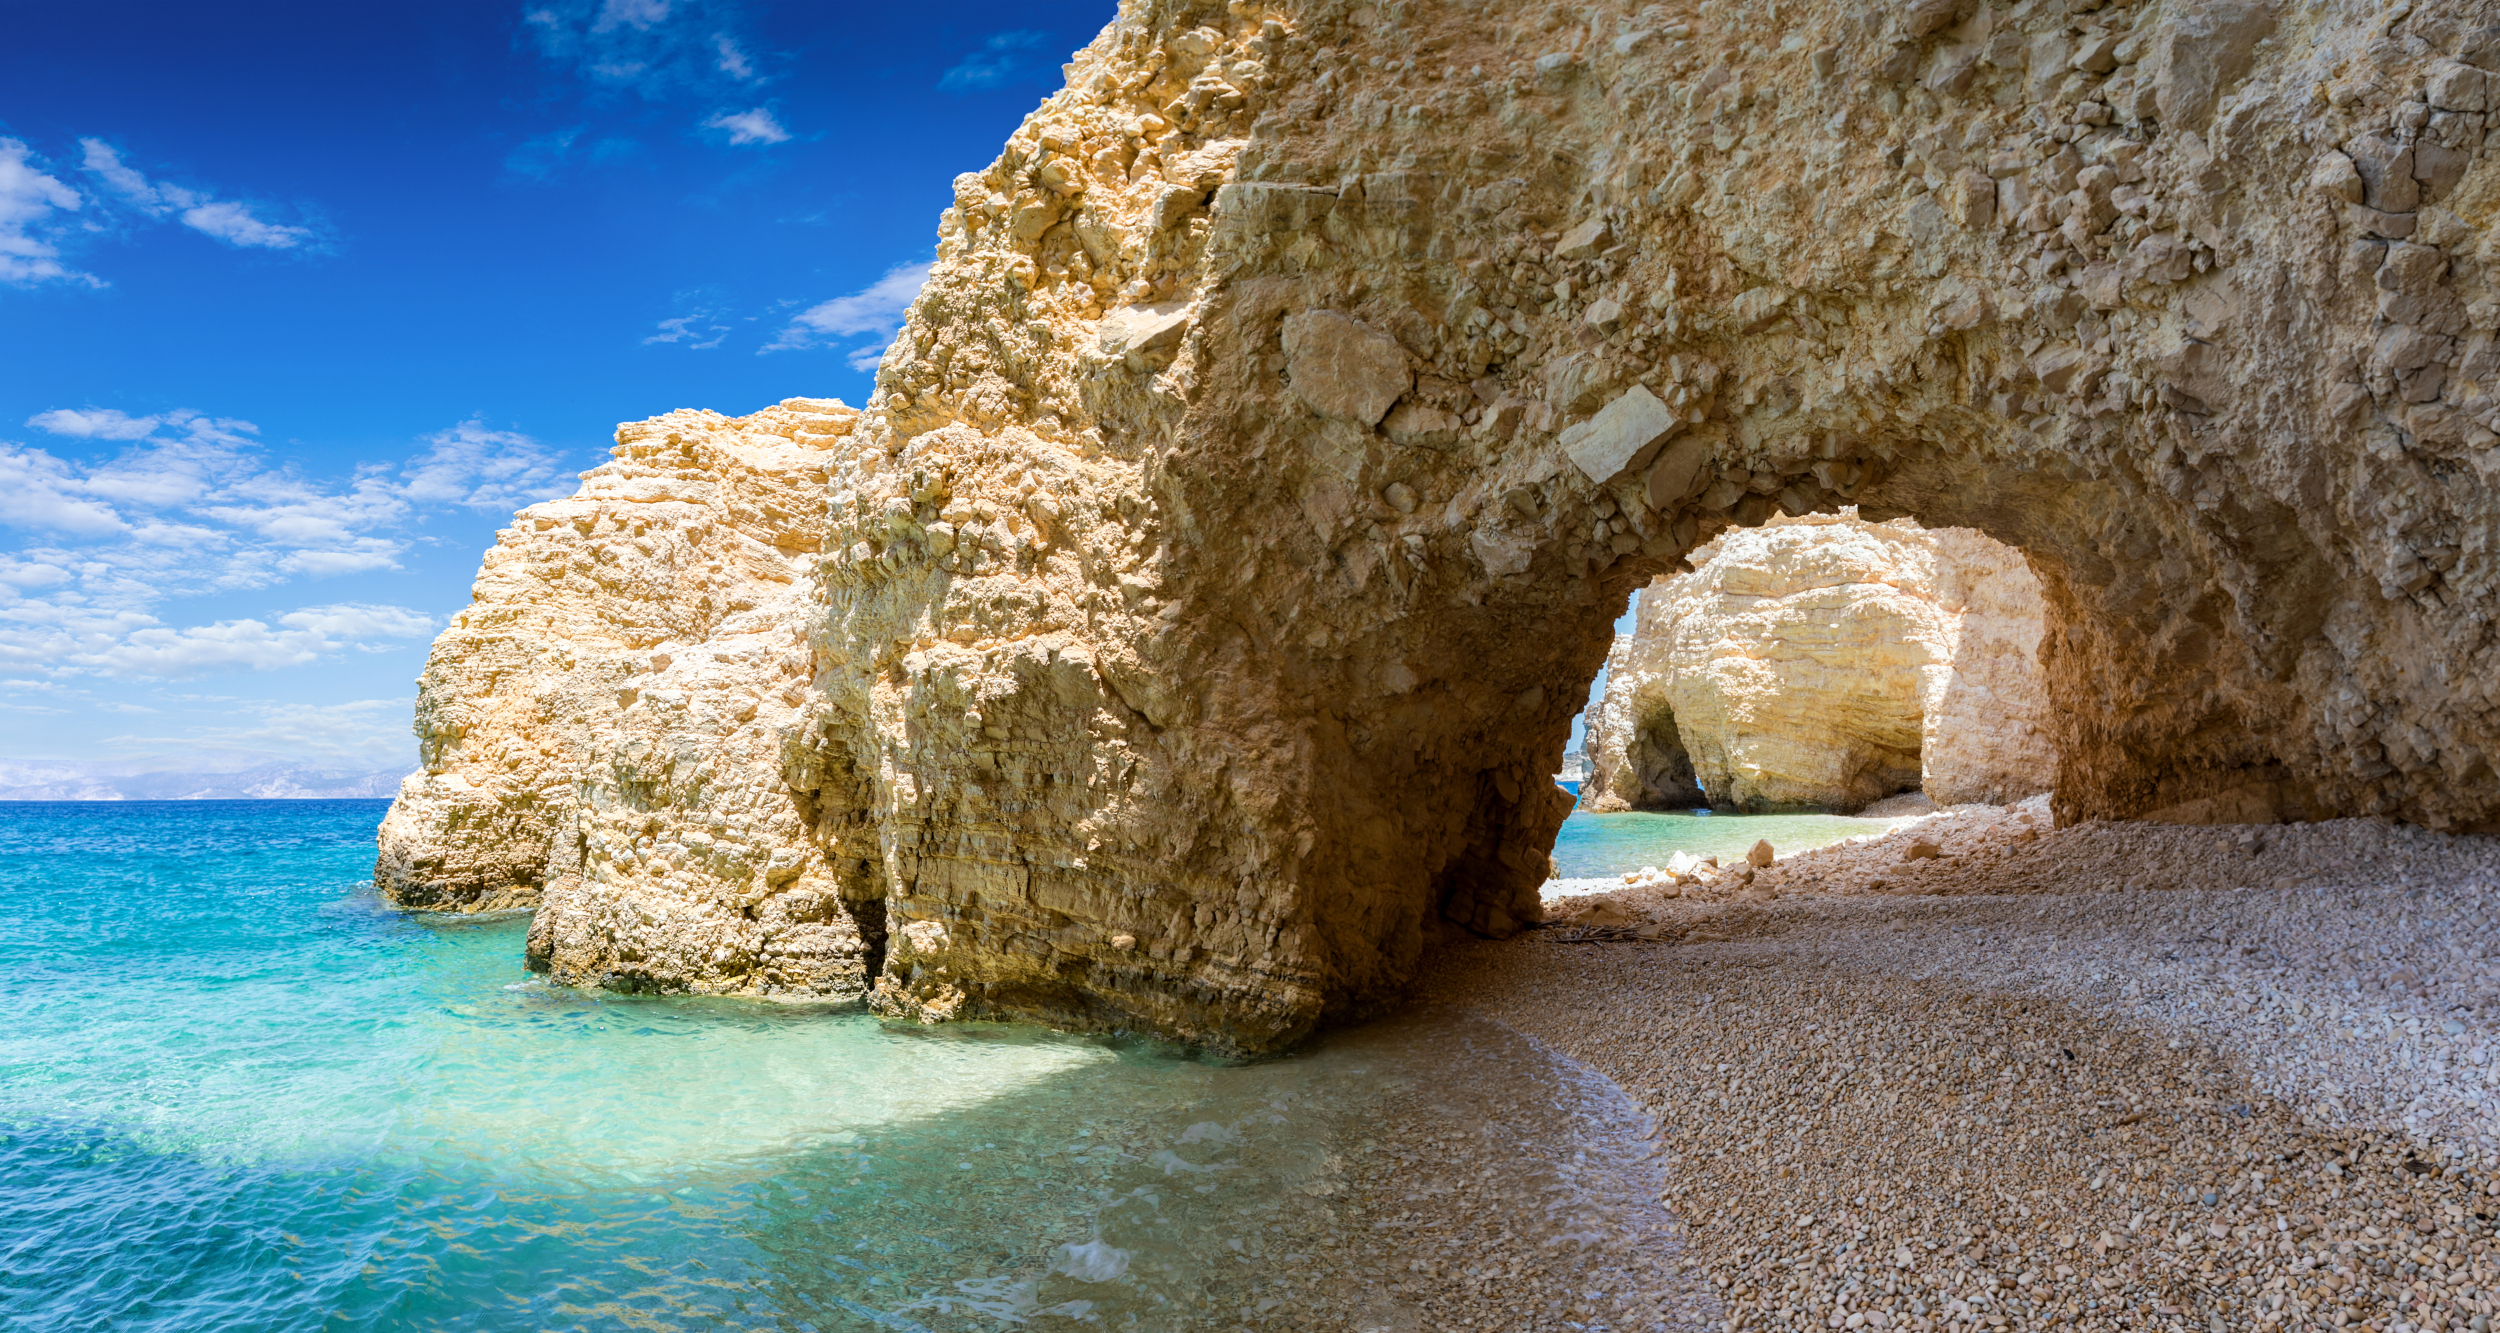 Μοναδικό γεωλογικό φαινόμενο: Το travelgirl.gr σου παρουσιάζει την παραλία του Αιγαίου που "ασπρίζει"σαν το γάλα!Πηγή φωτογραφίας: https://passenger.gr/